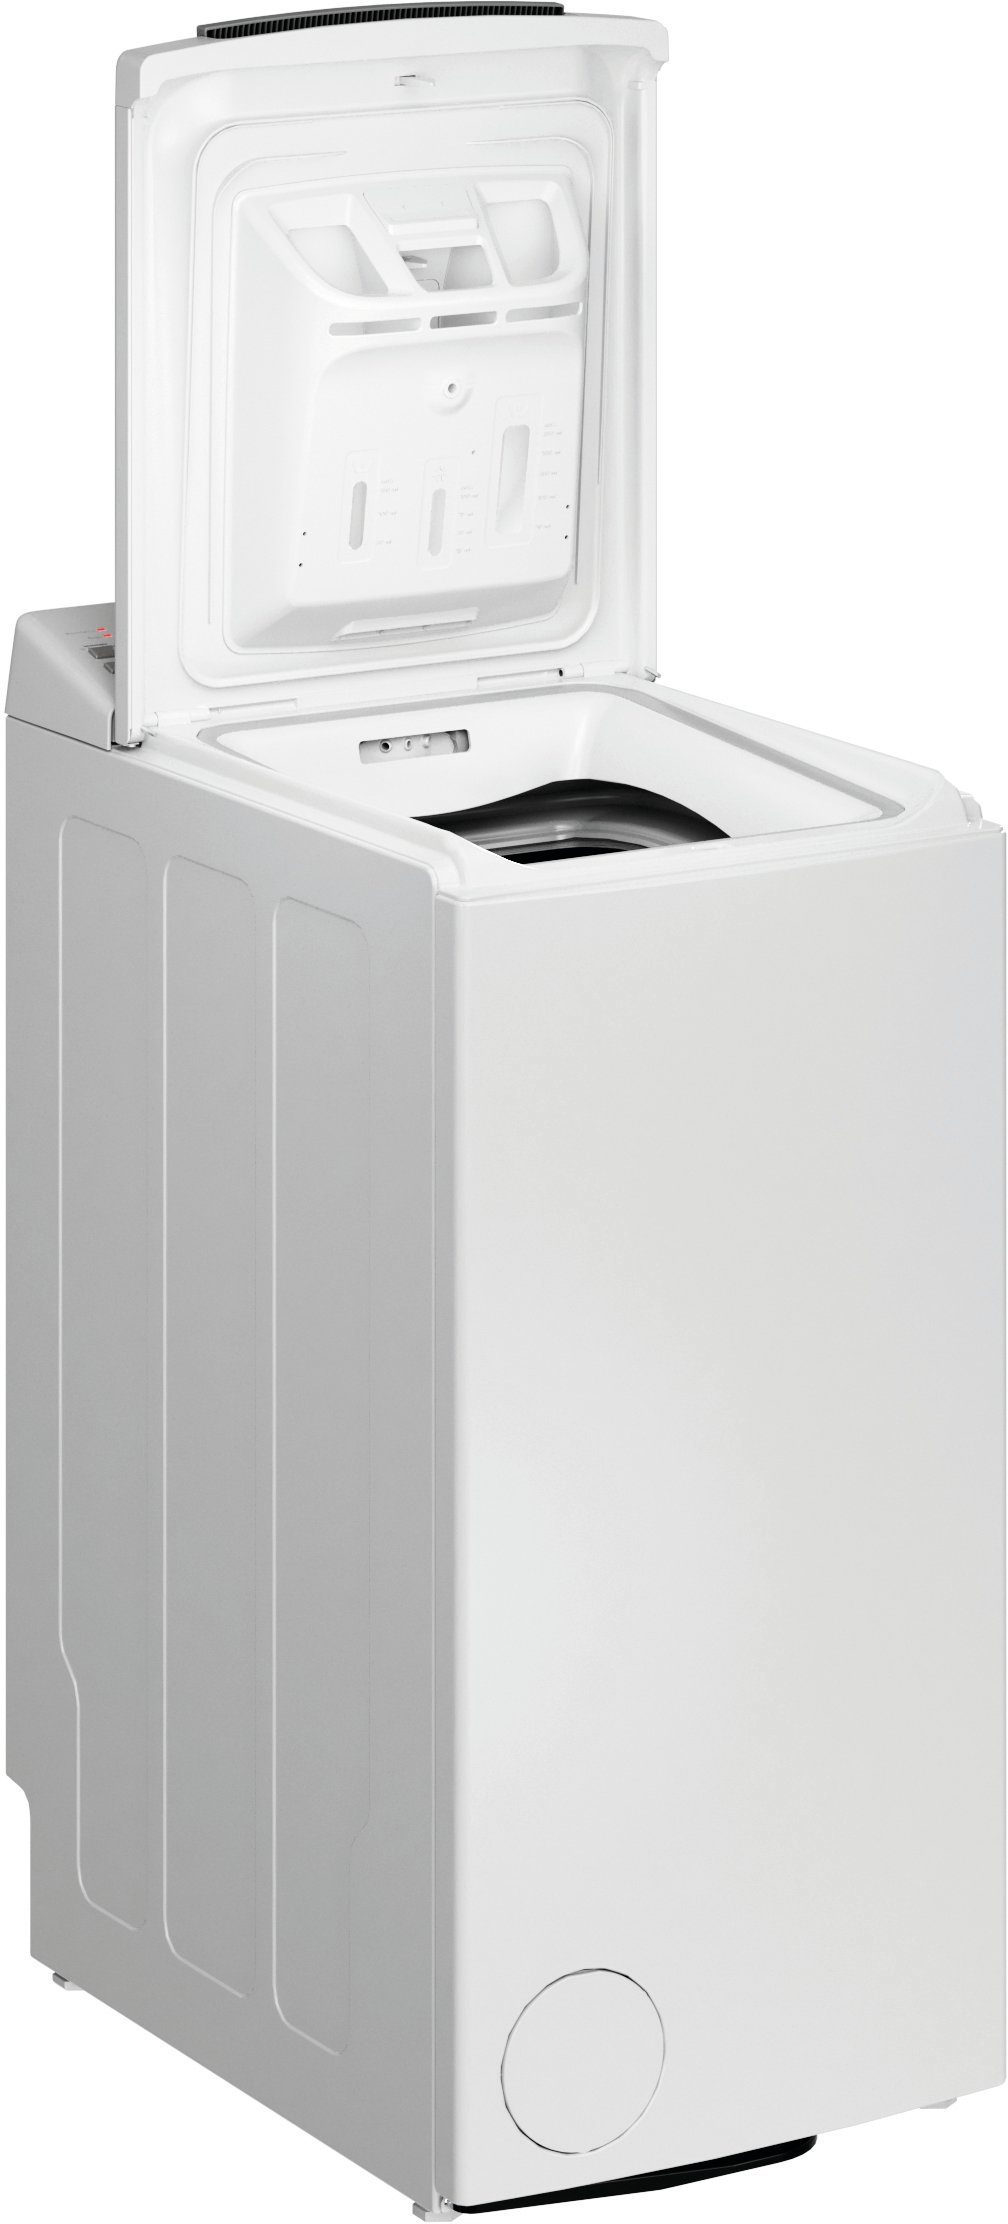 BAUKNECHT Waschmaschine Toplader WAT kg, C, 1200 6313 6 U/min